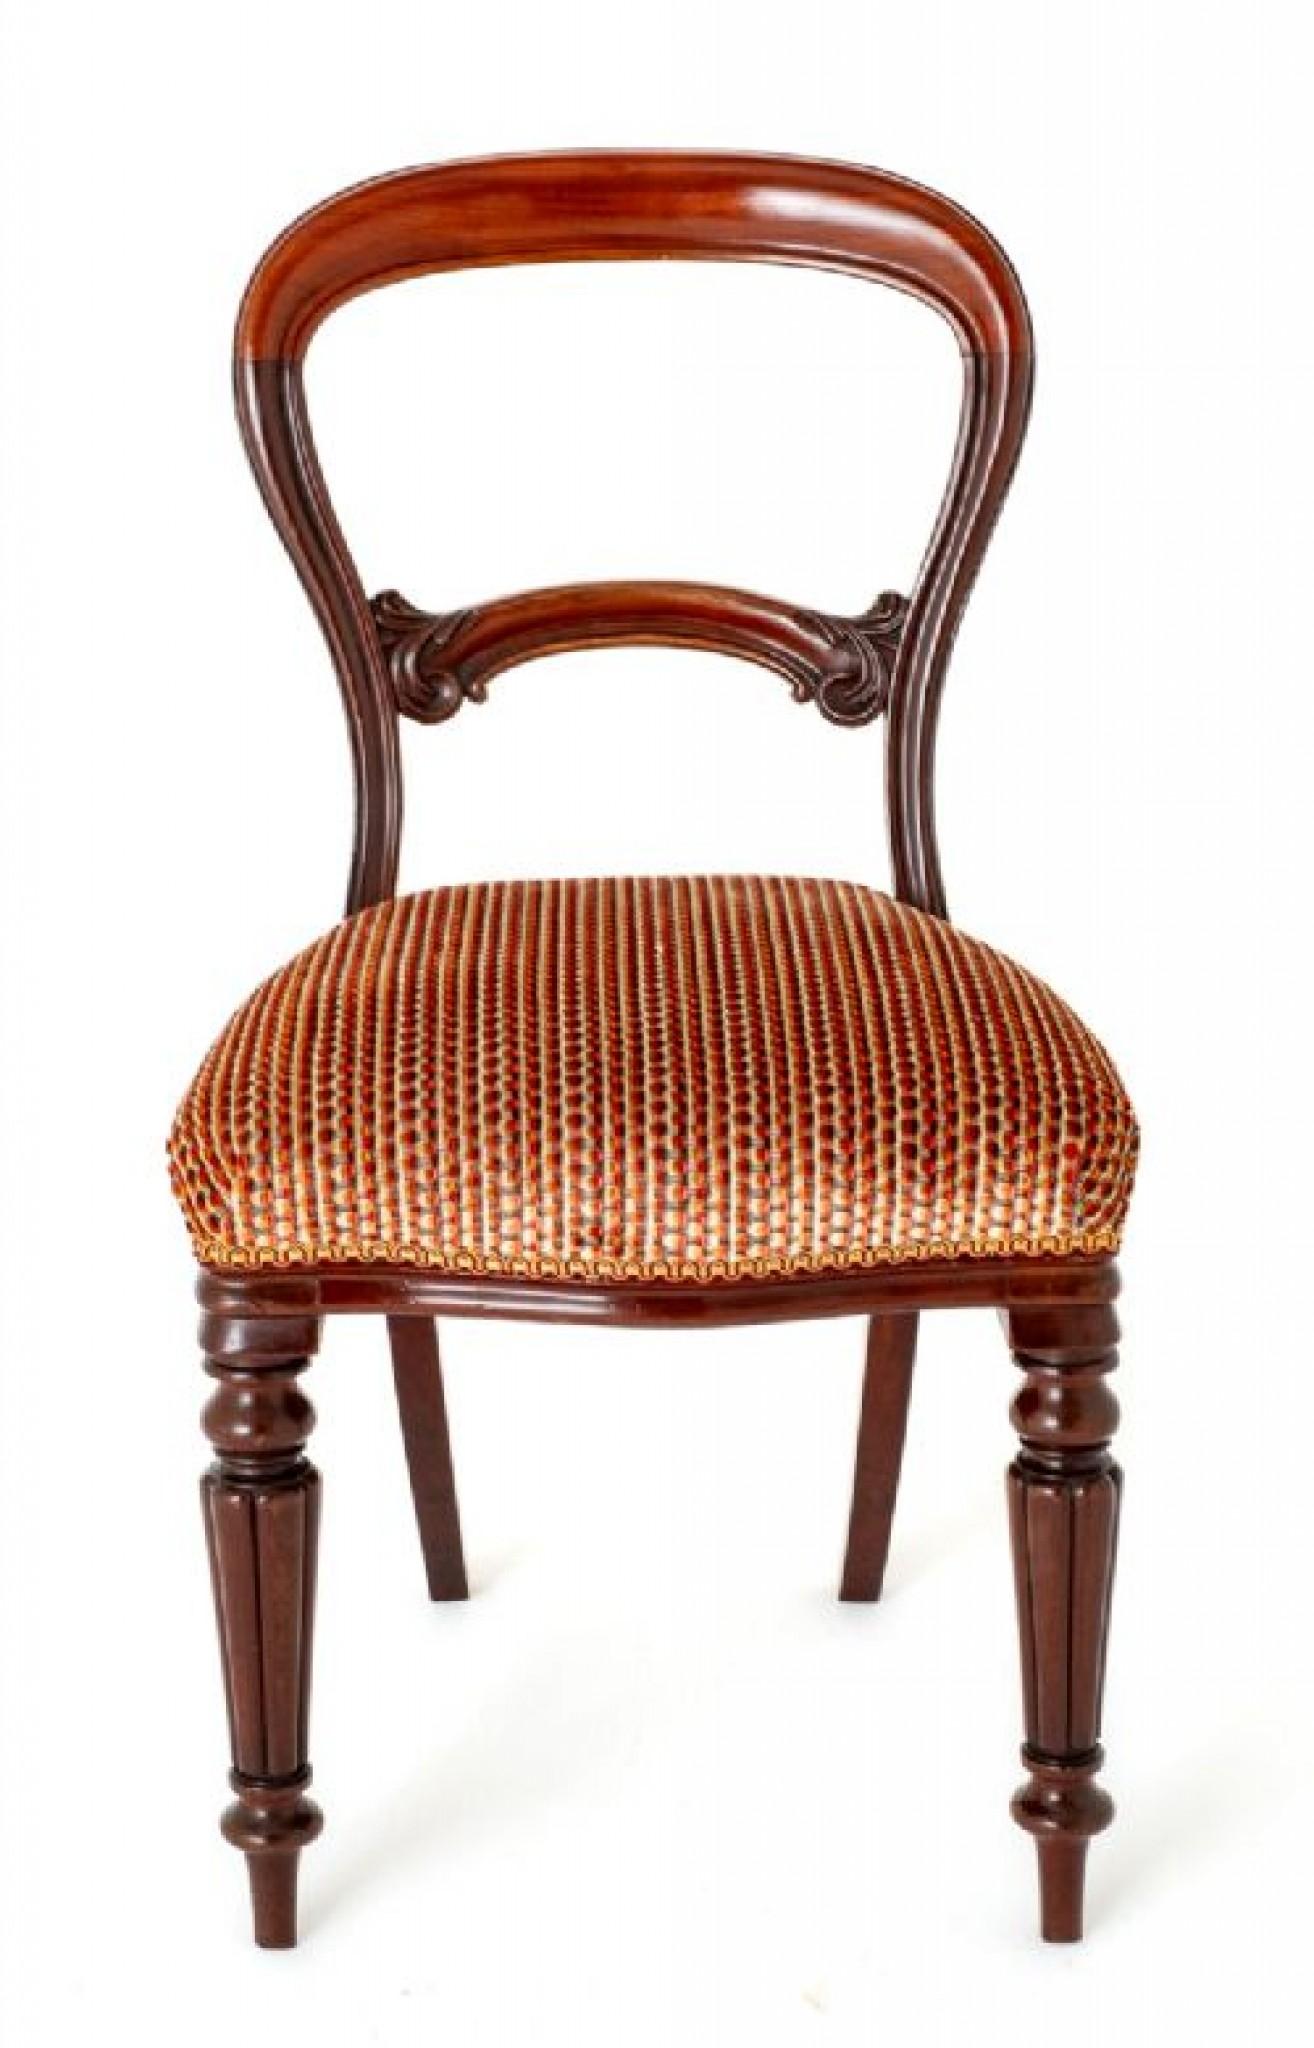 Hier haben wir eine Qualität Satz von 8 frühen viktorianischen Mahagoni Ballon zurück Esszimmer Stühle aus Qualität Holz.
CIRCA 1850
Die vorderen Beine sind ringförmig gedreht und kanneliert, die hinteren Beine haben die Form eines Säbels.
Die